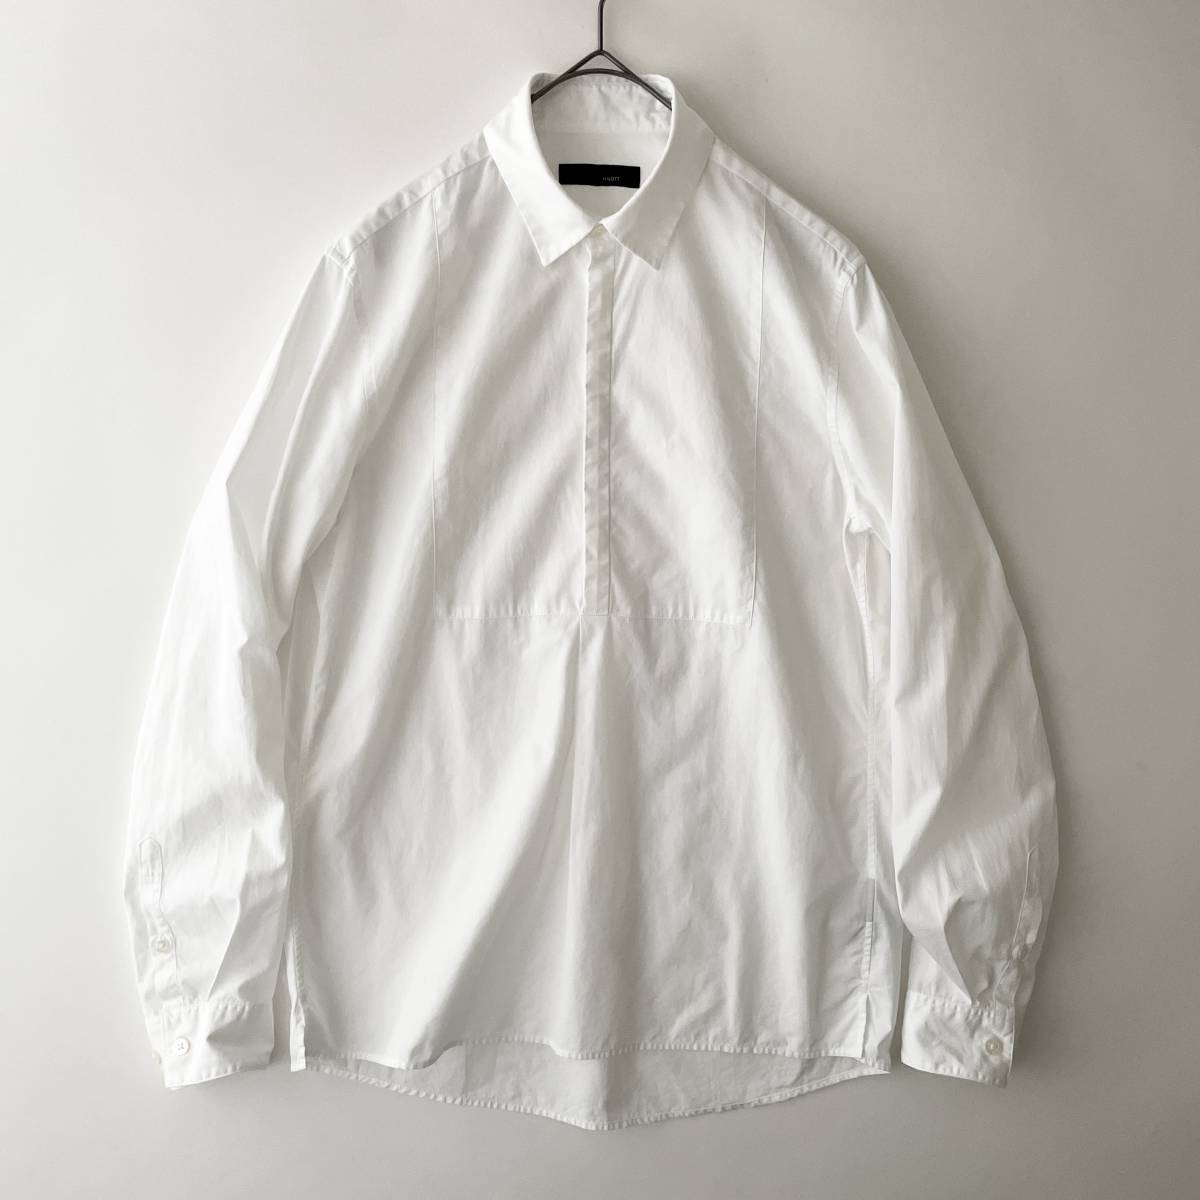 【美品】KNOTT -GALERIE VIE- size/0 (h) 日本製 ノット ギャルリー ヴィー プルオーバーシャツ 長袖 ホワイト 白 shirt JAPAN_画像1